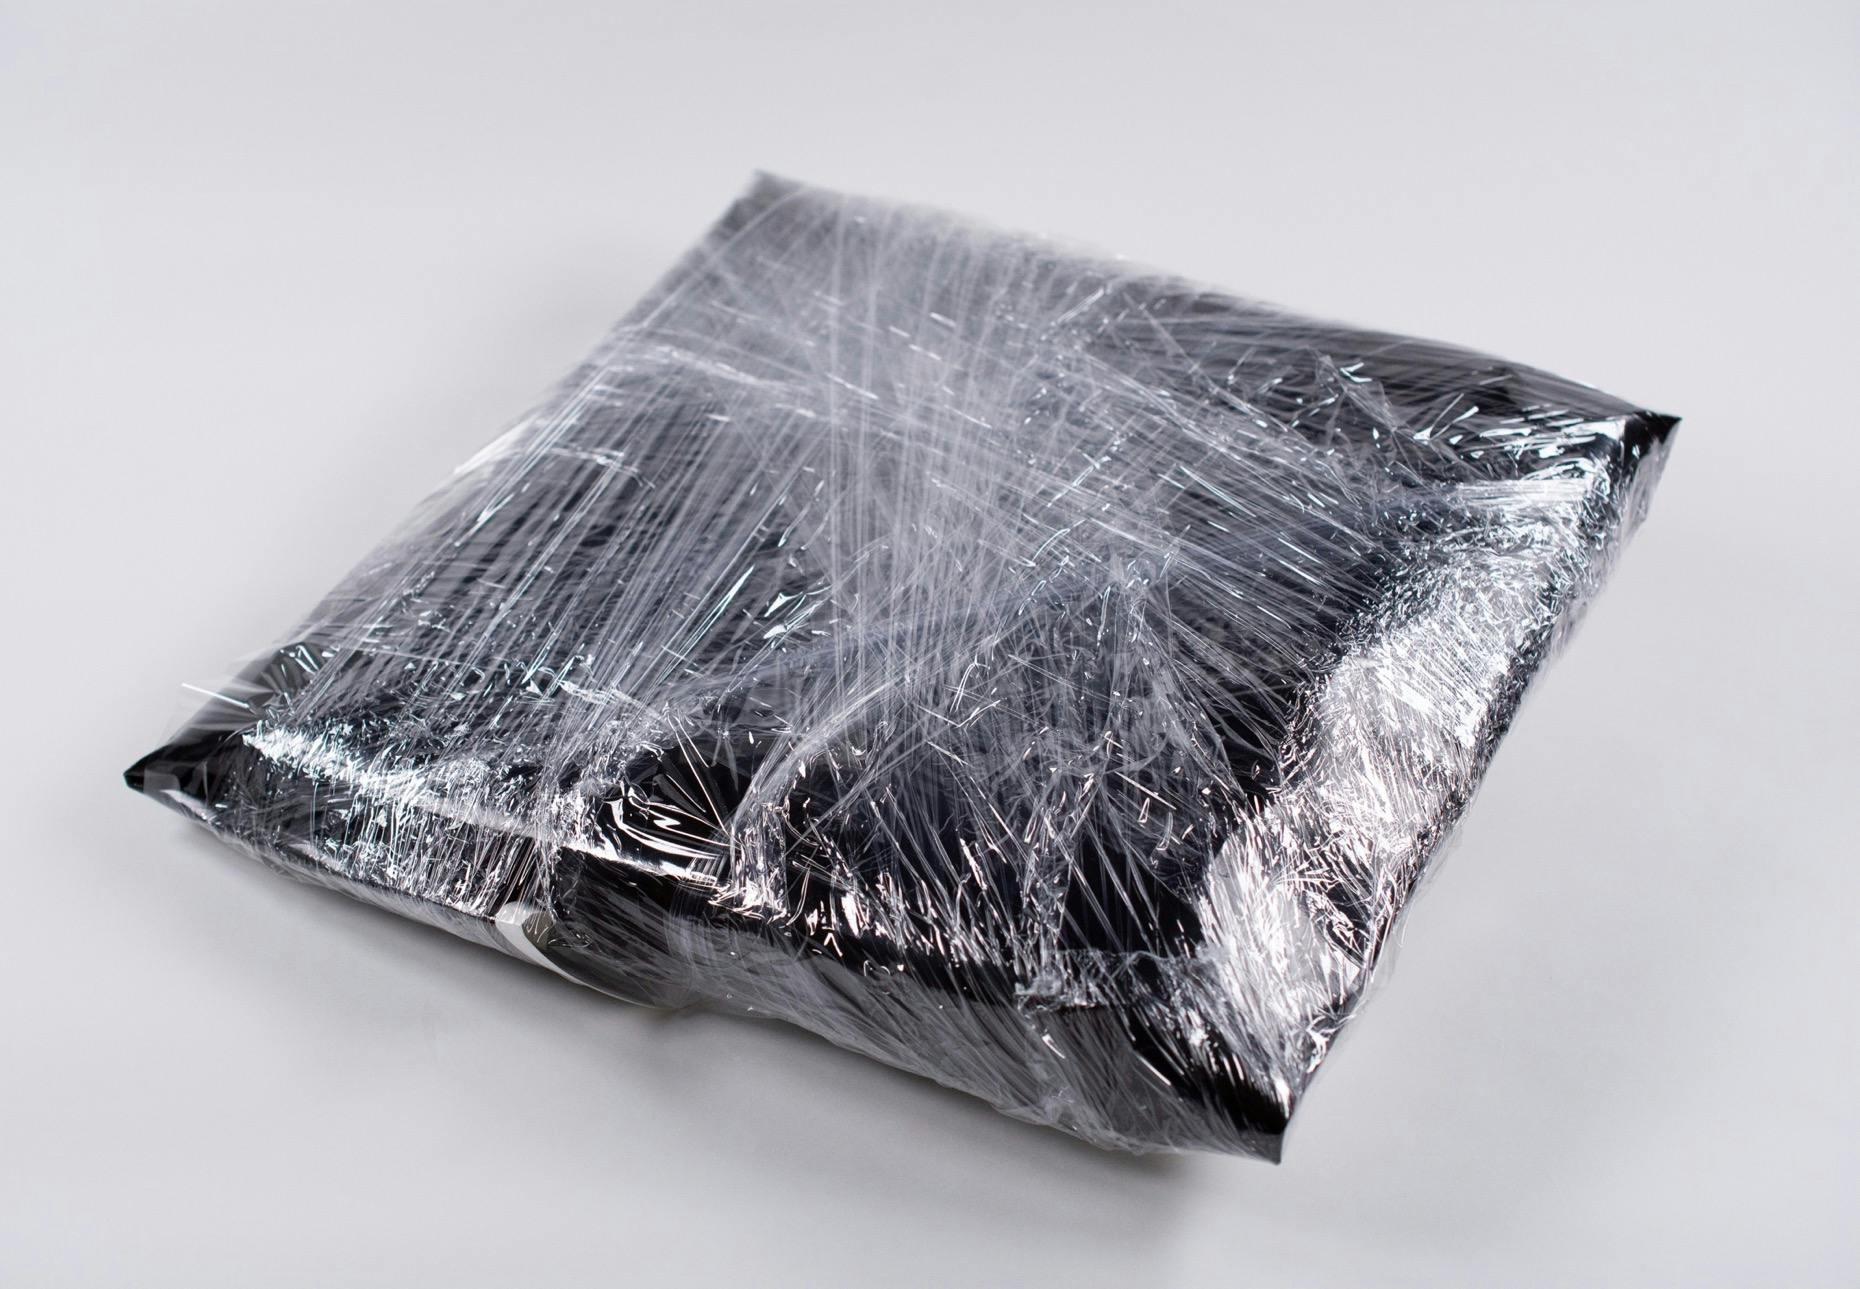 小松浩子作品《Wrap》と共通するラップ梱包(見本画像)